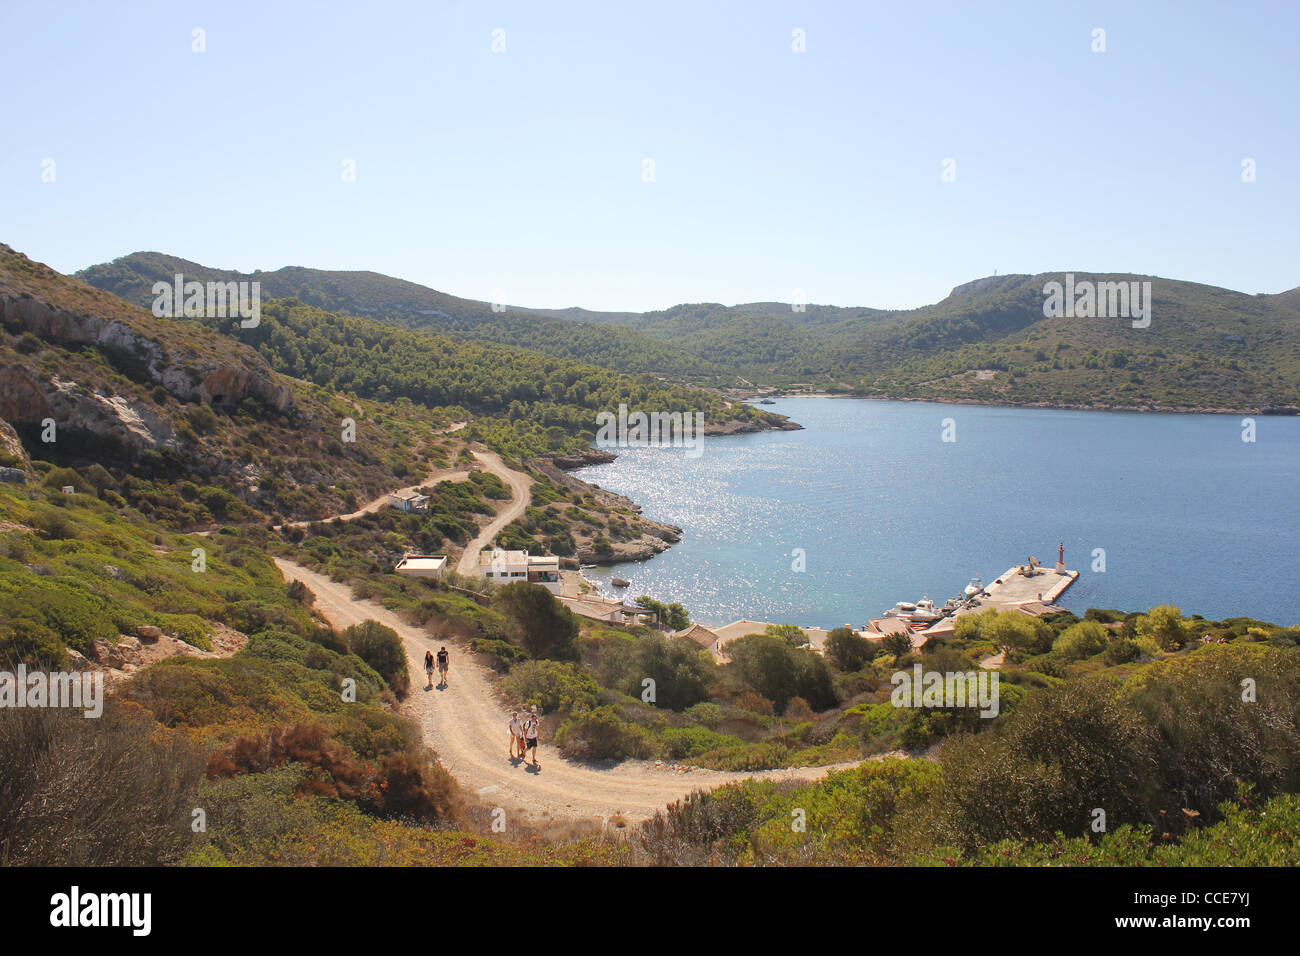 Scène sur l'île de Cabrera Cabrera, archipel d'îles, un parc naturel Espagnol, situé au sud-est de Palma de Mallorca Banque D'Images